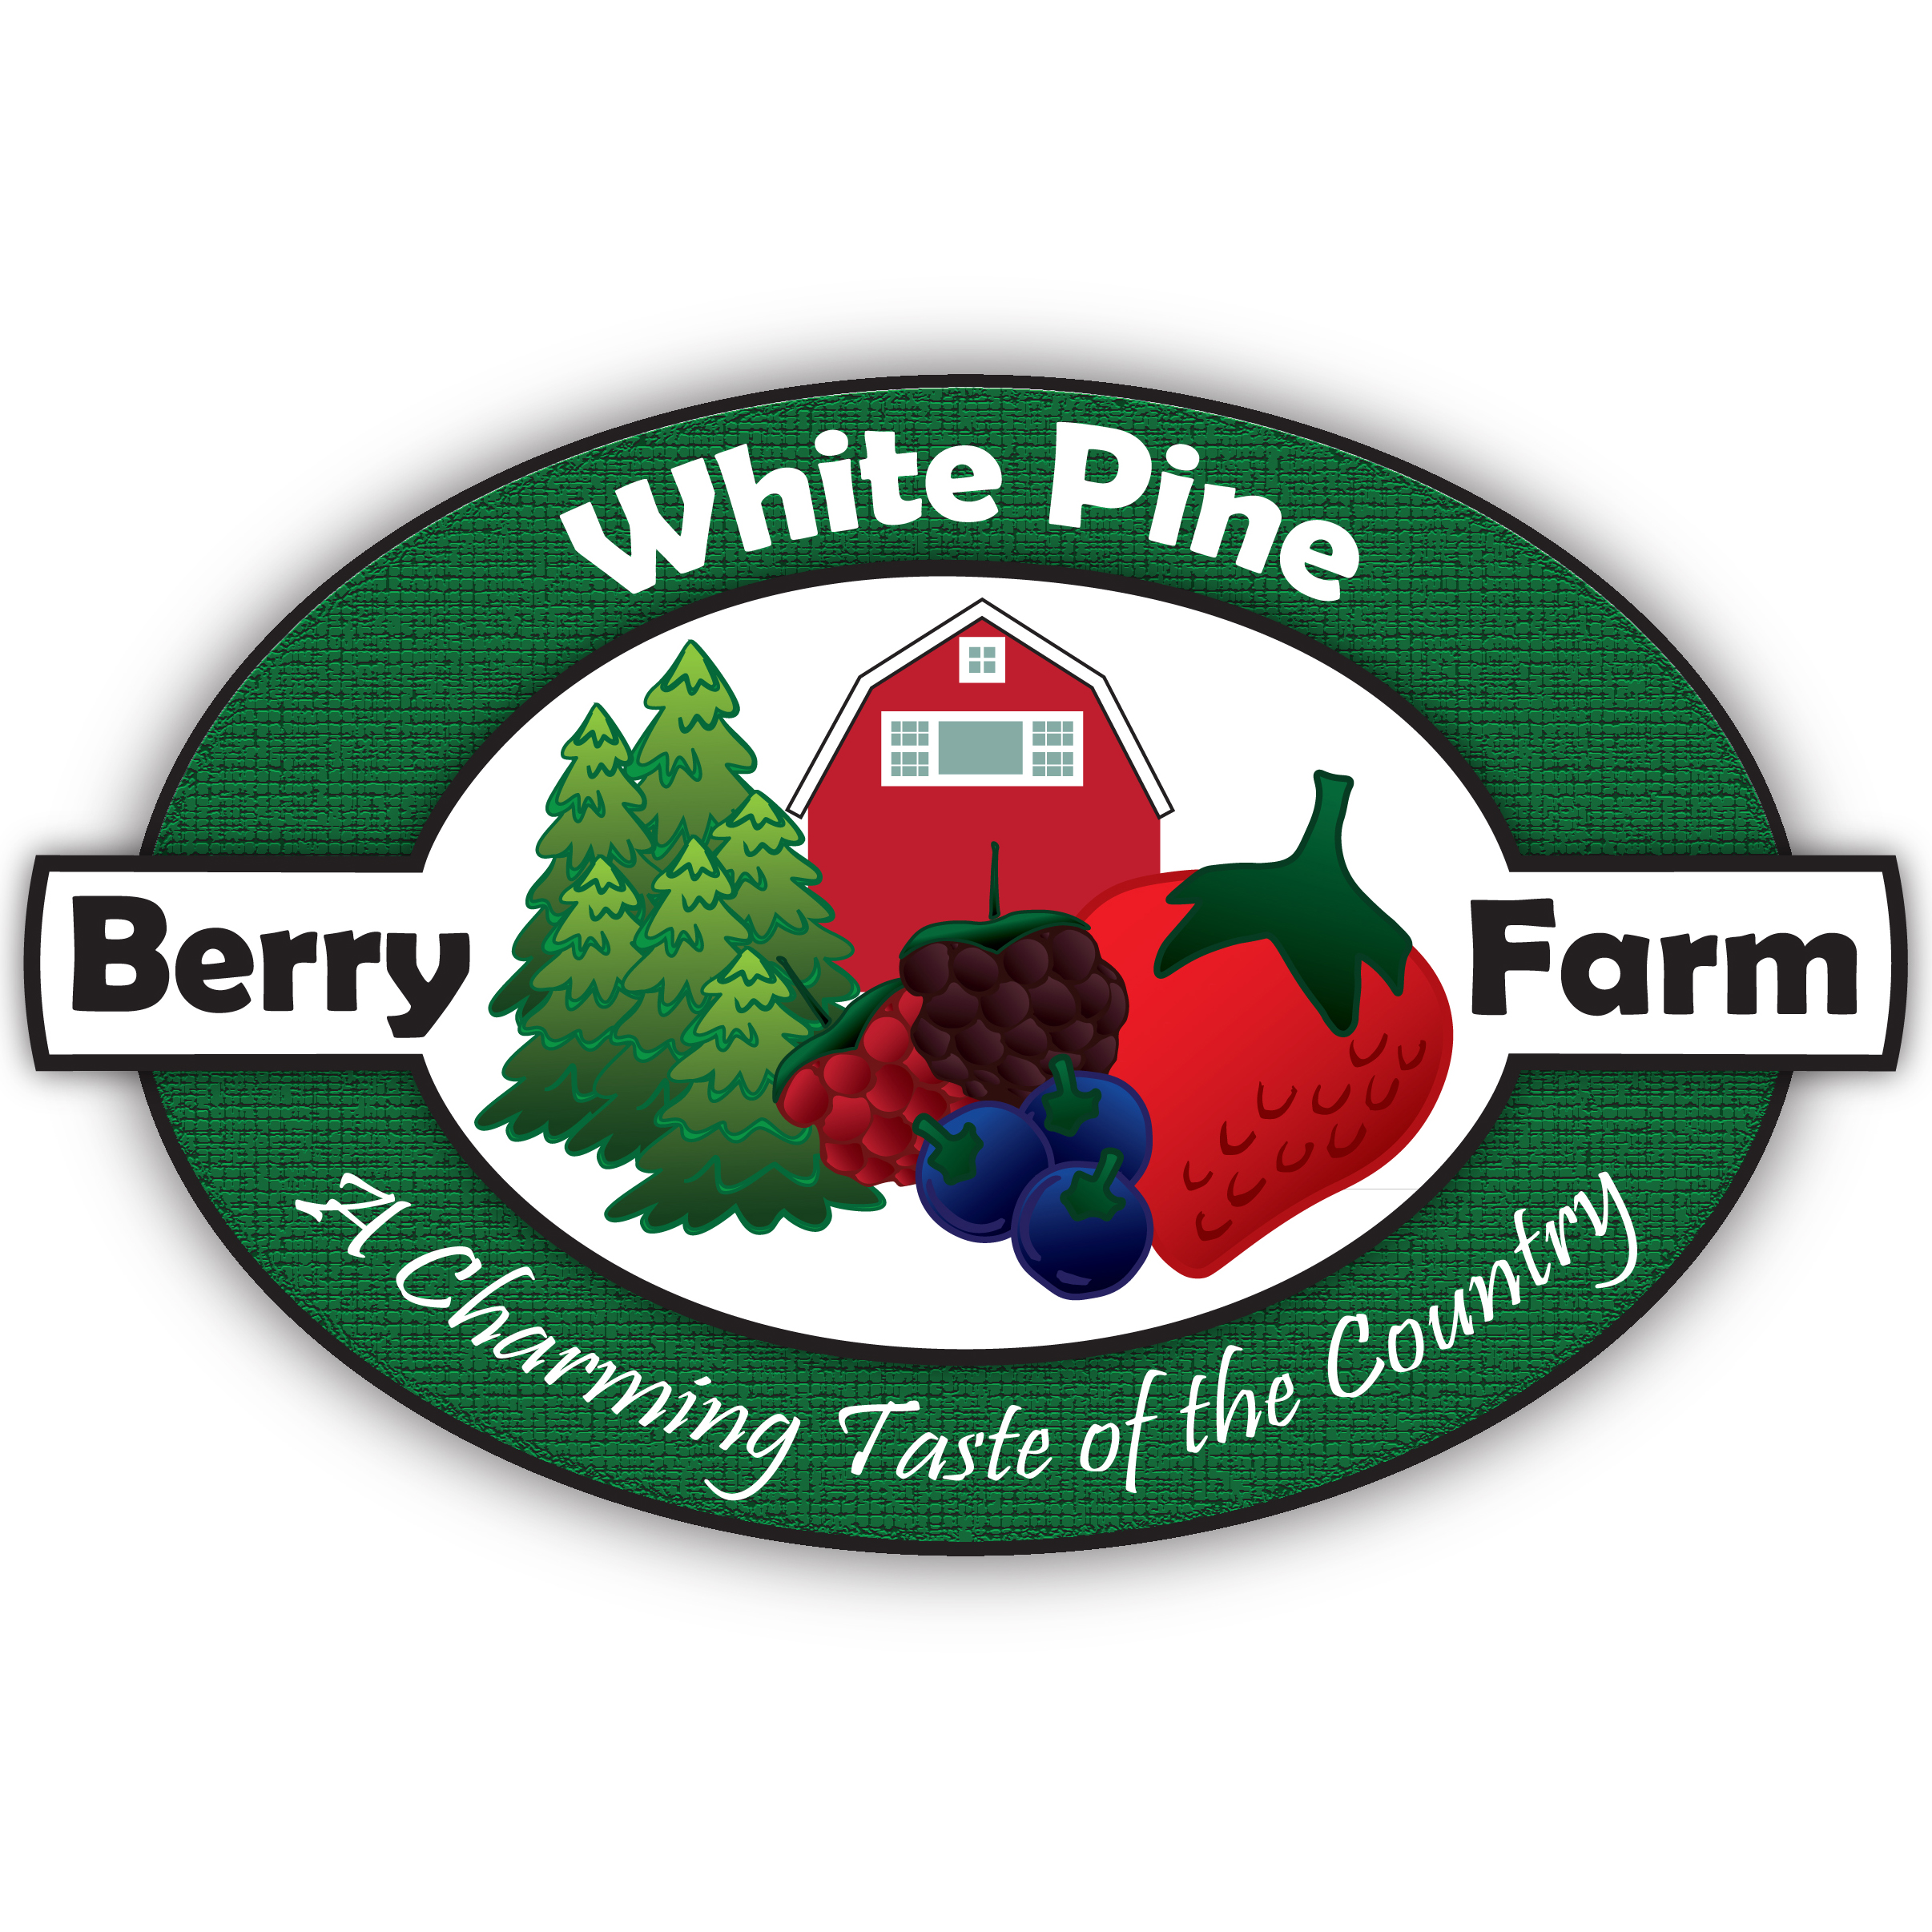 White Pine Berry Farm